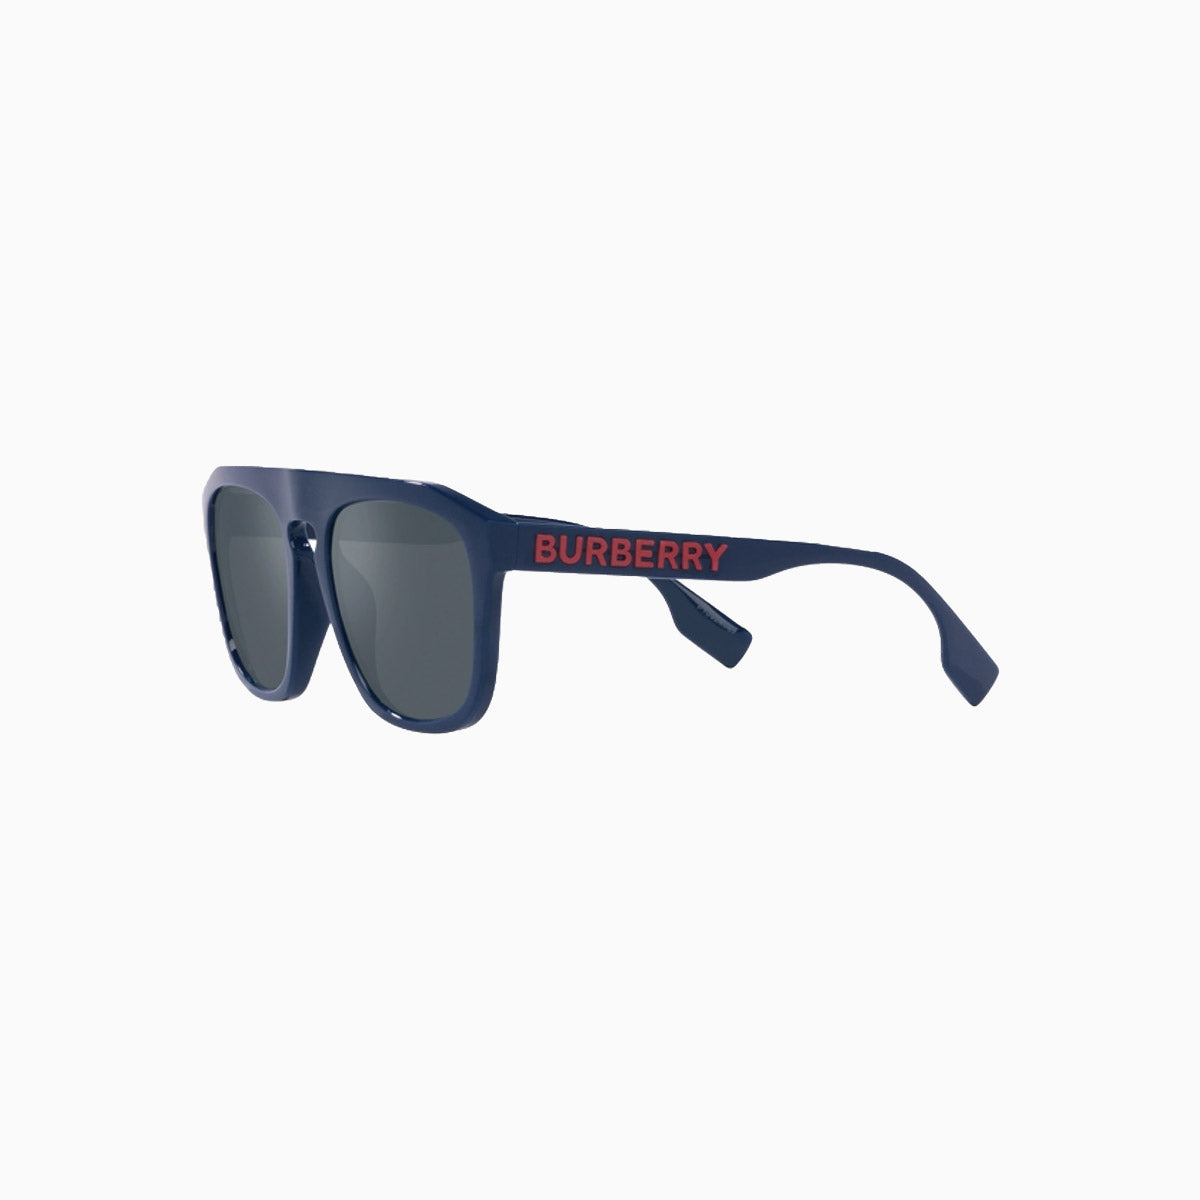 mens-burberry-wren-blue-sunglasses-0be4396u-405825